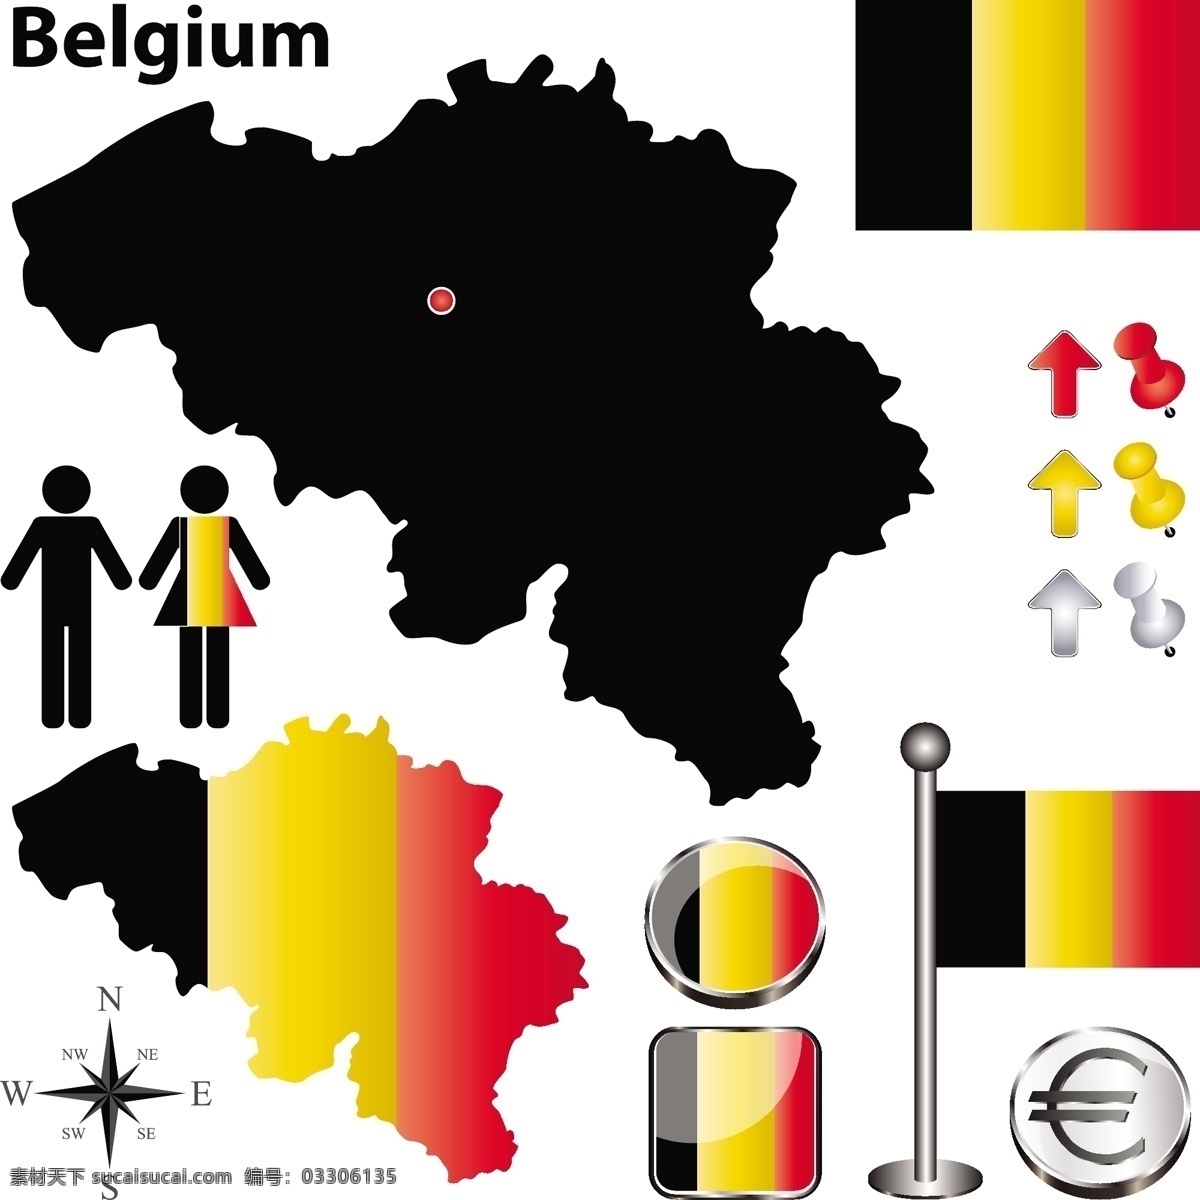 比利时 国旗 地图 比利时国旗 国旗图标 立体按钮 图钉 空间环境 矢量素材 白色